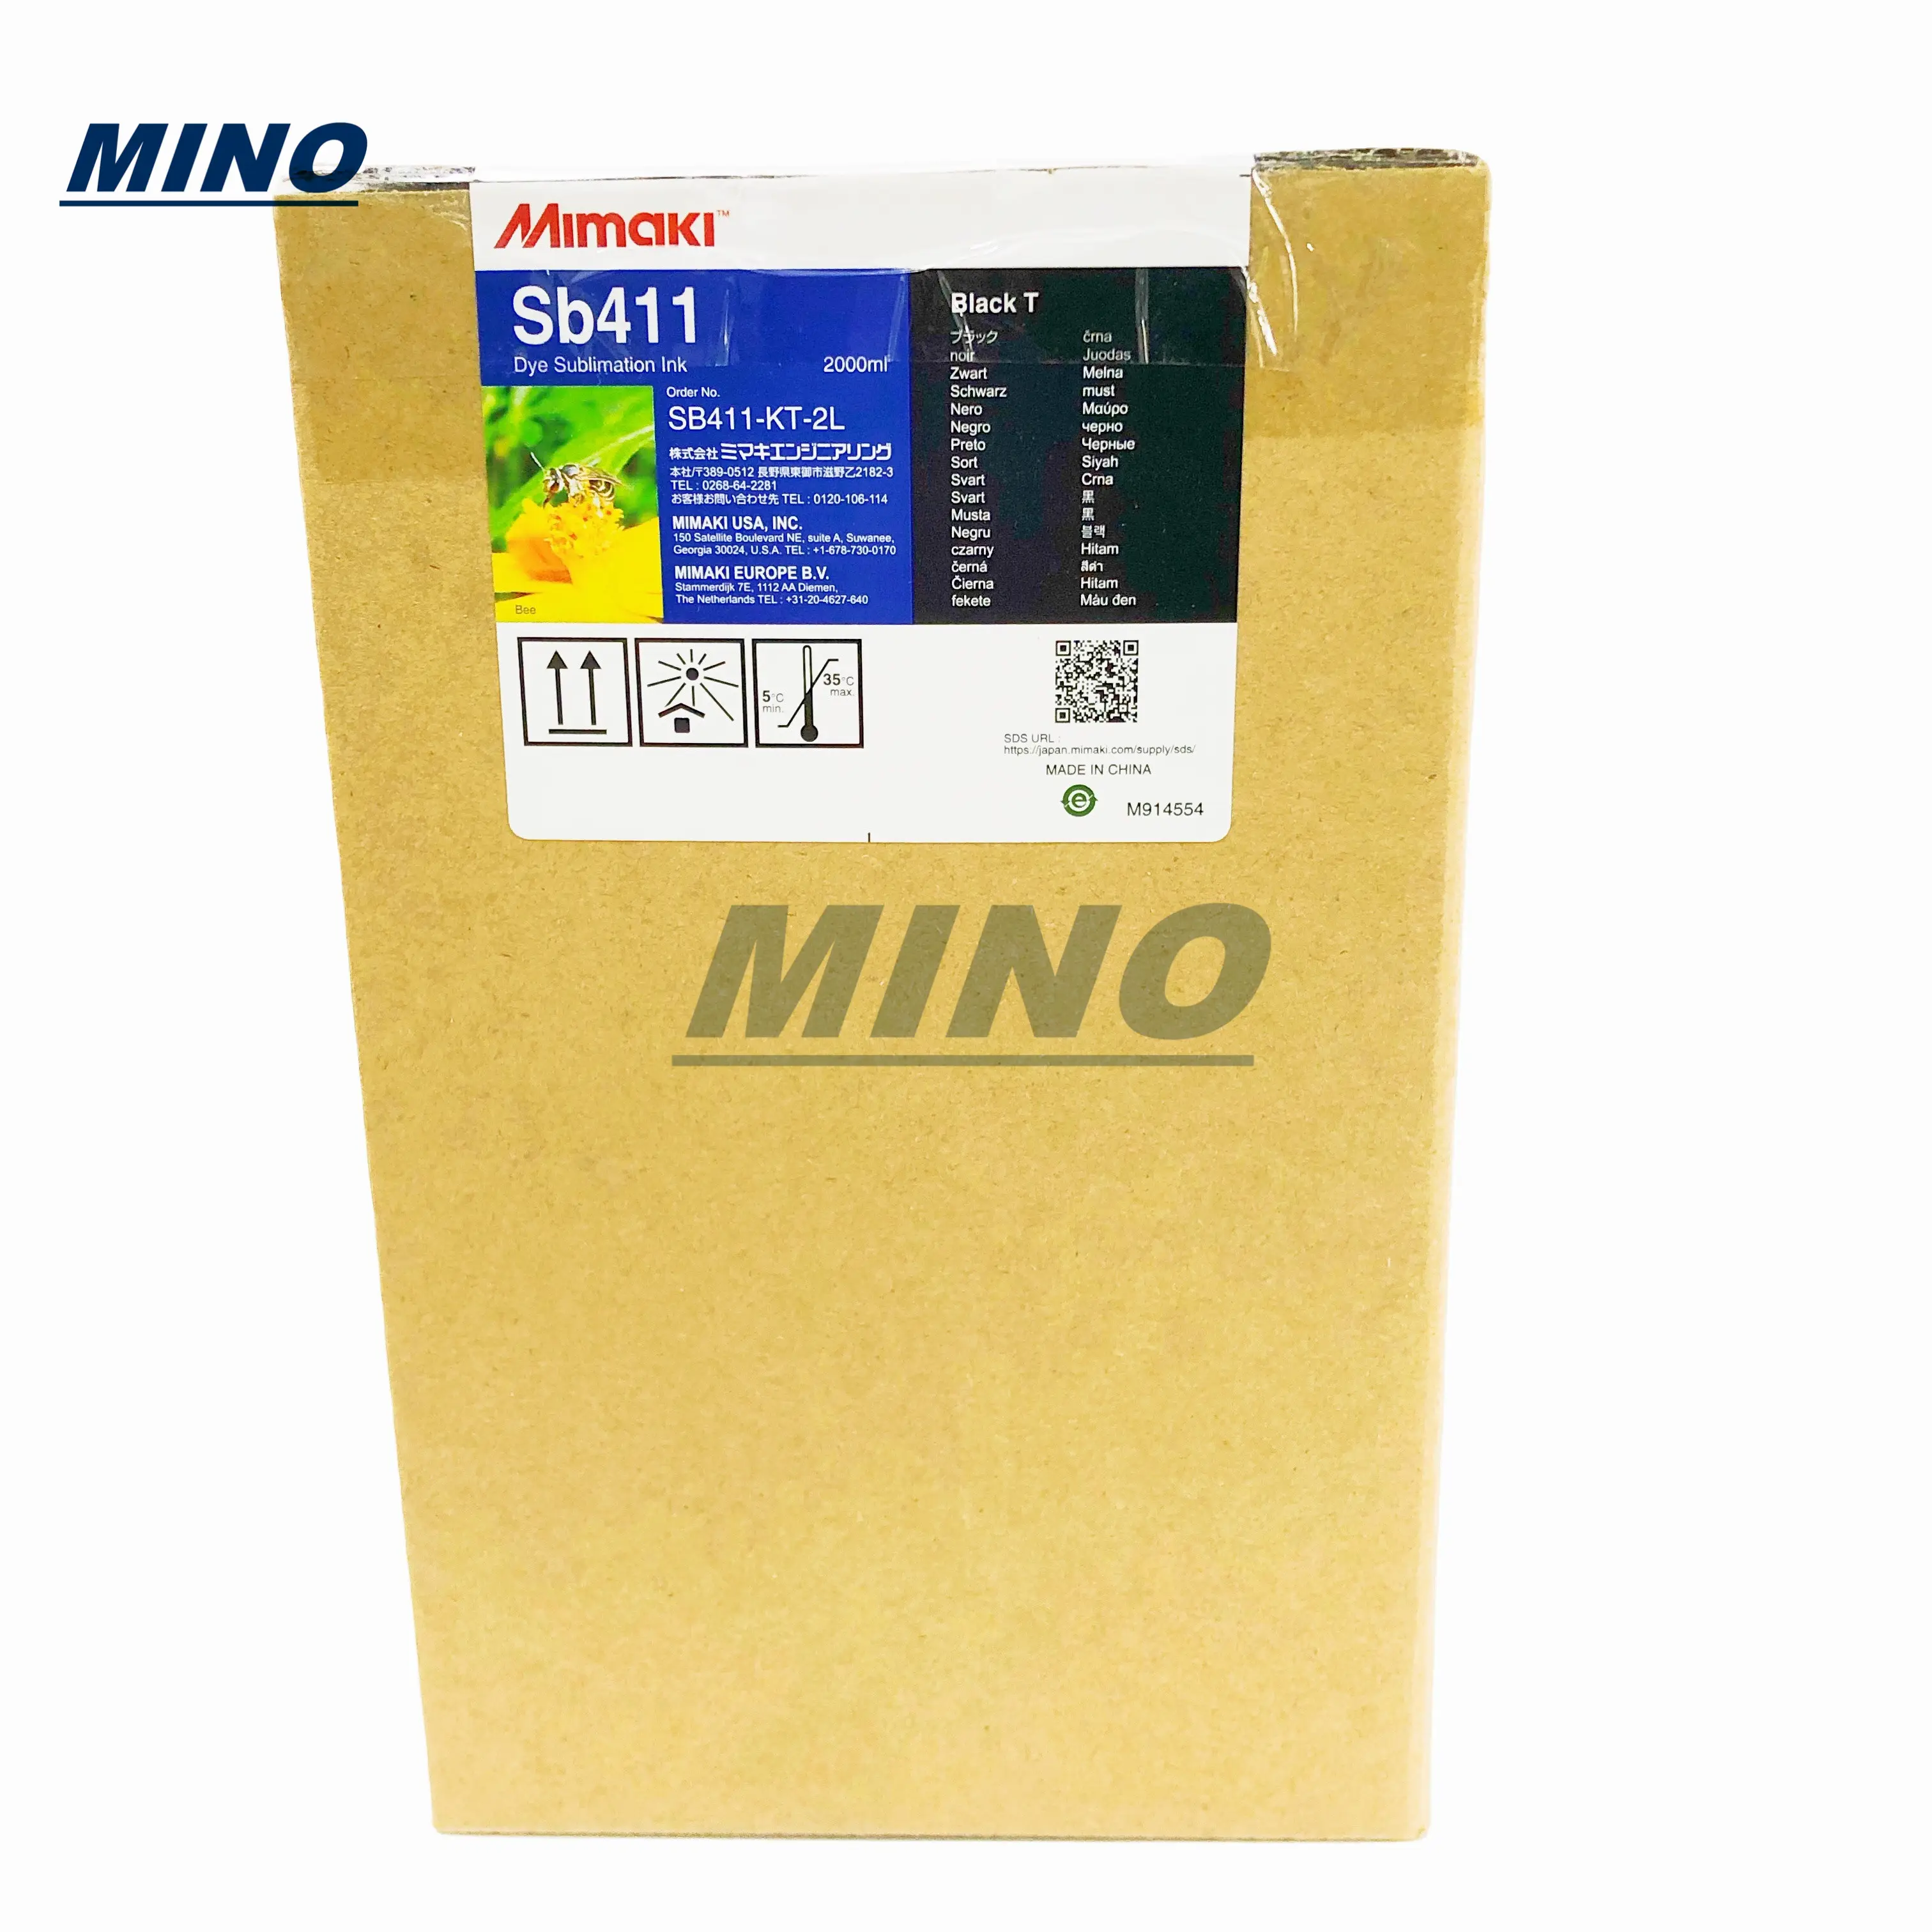 Inchiostro Mimaki SB411 da 2000ml con chip sb411 per stampante TS300P-1800,JV150,JV300, 6 colori